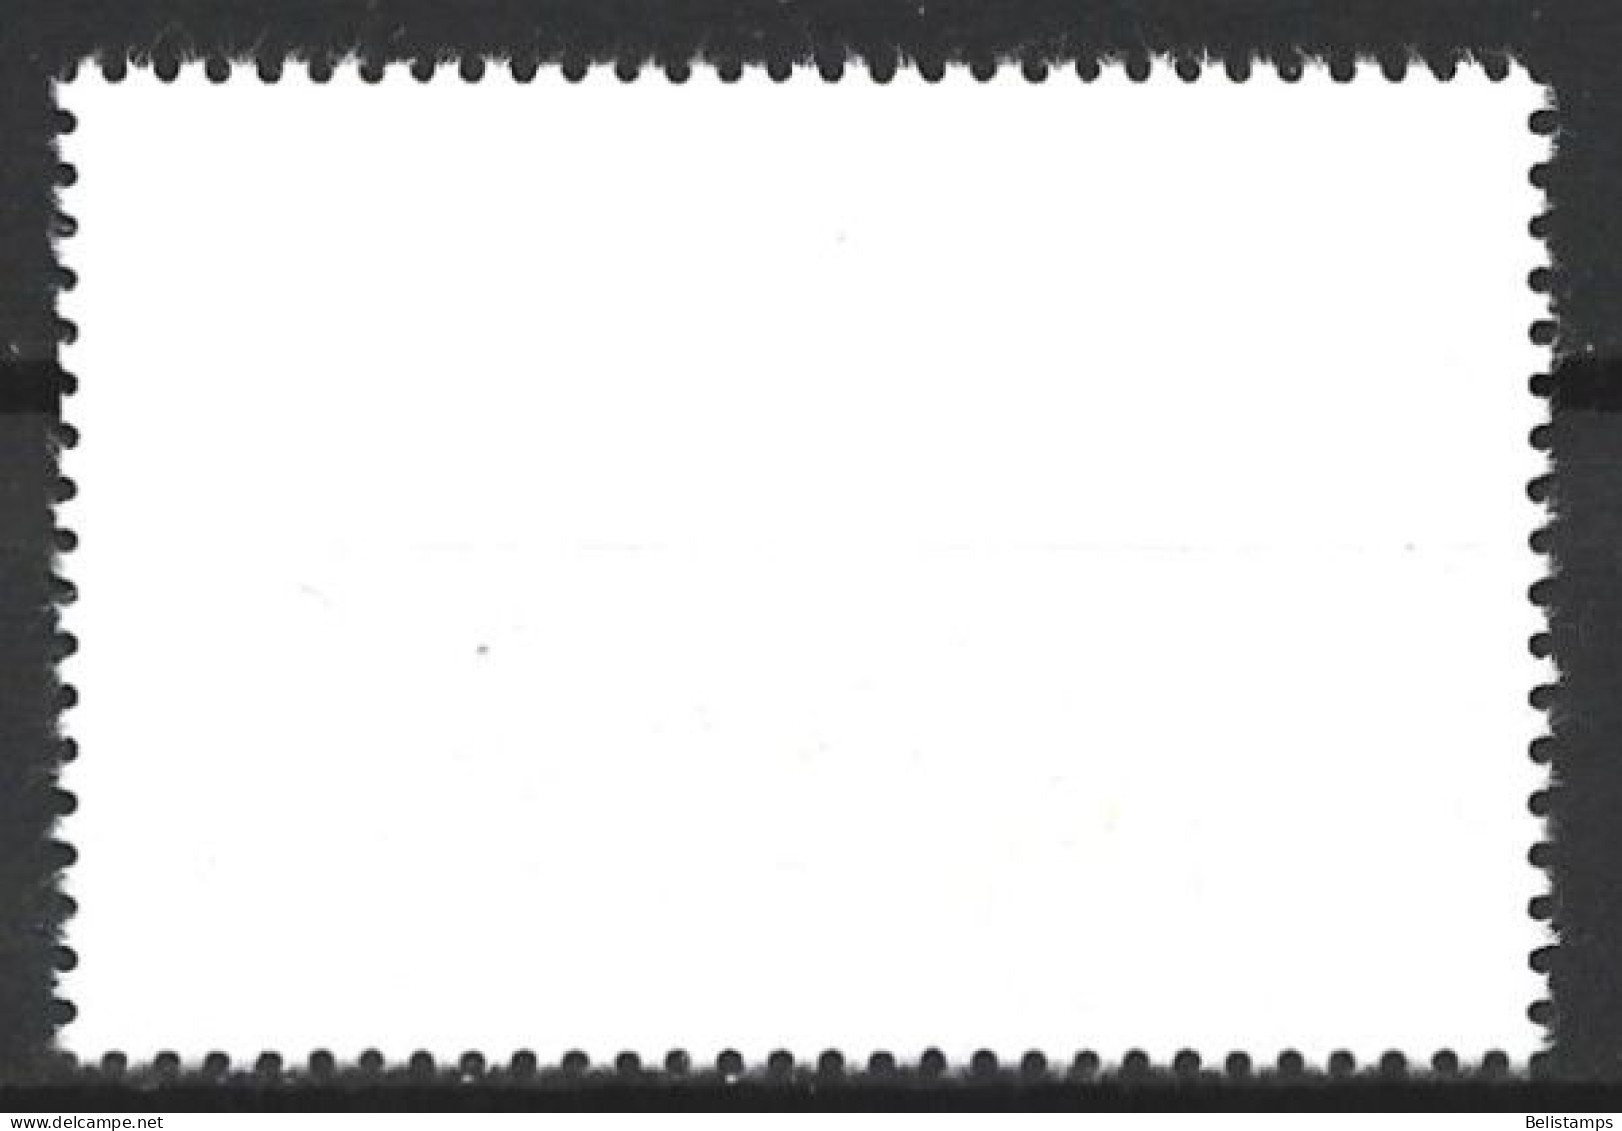 Cuba 1977. Scott #2163 (U) Intl. Airmail Service, 50th Anniv. - Oblitérés